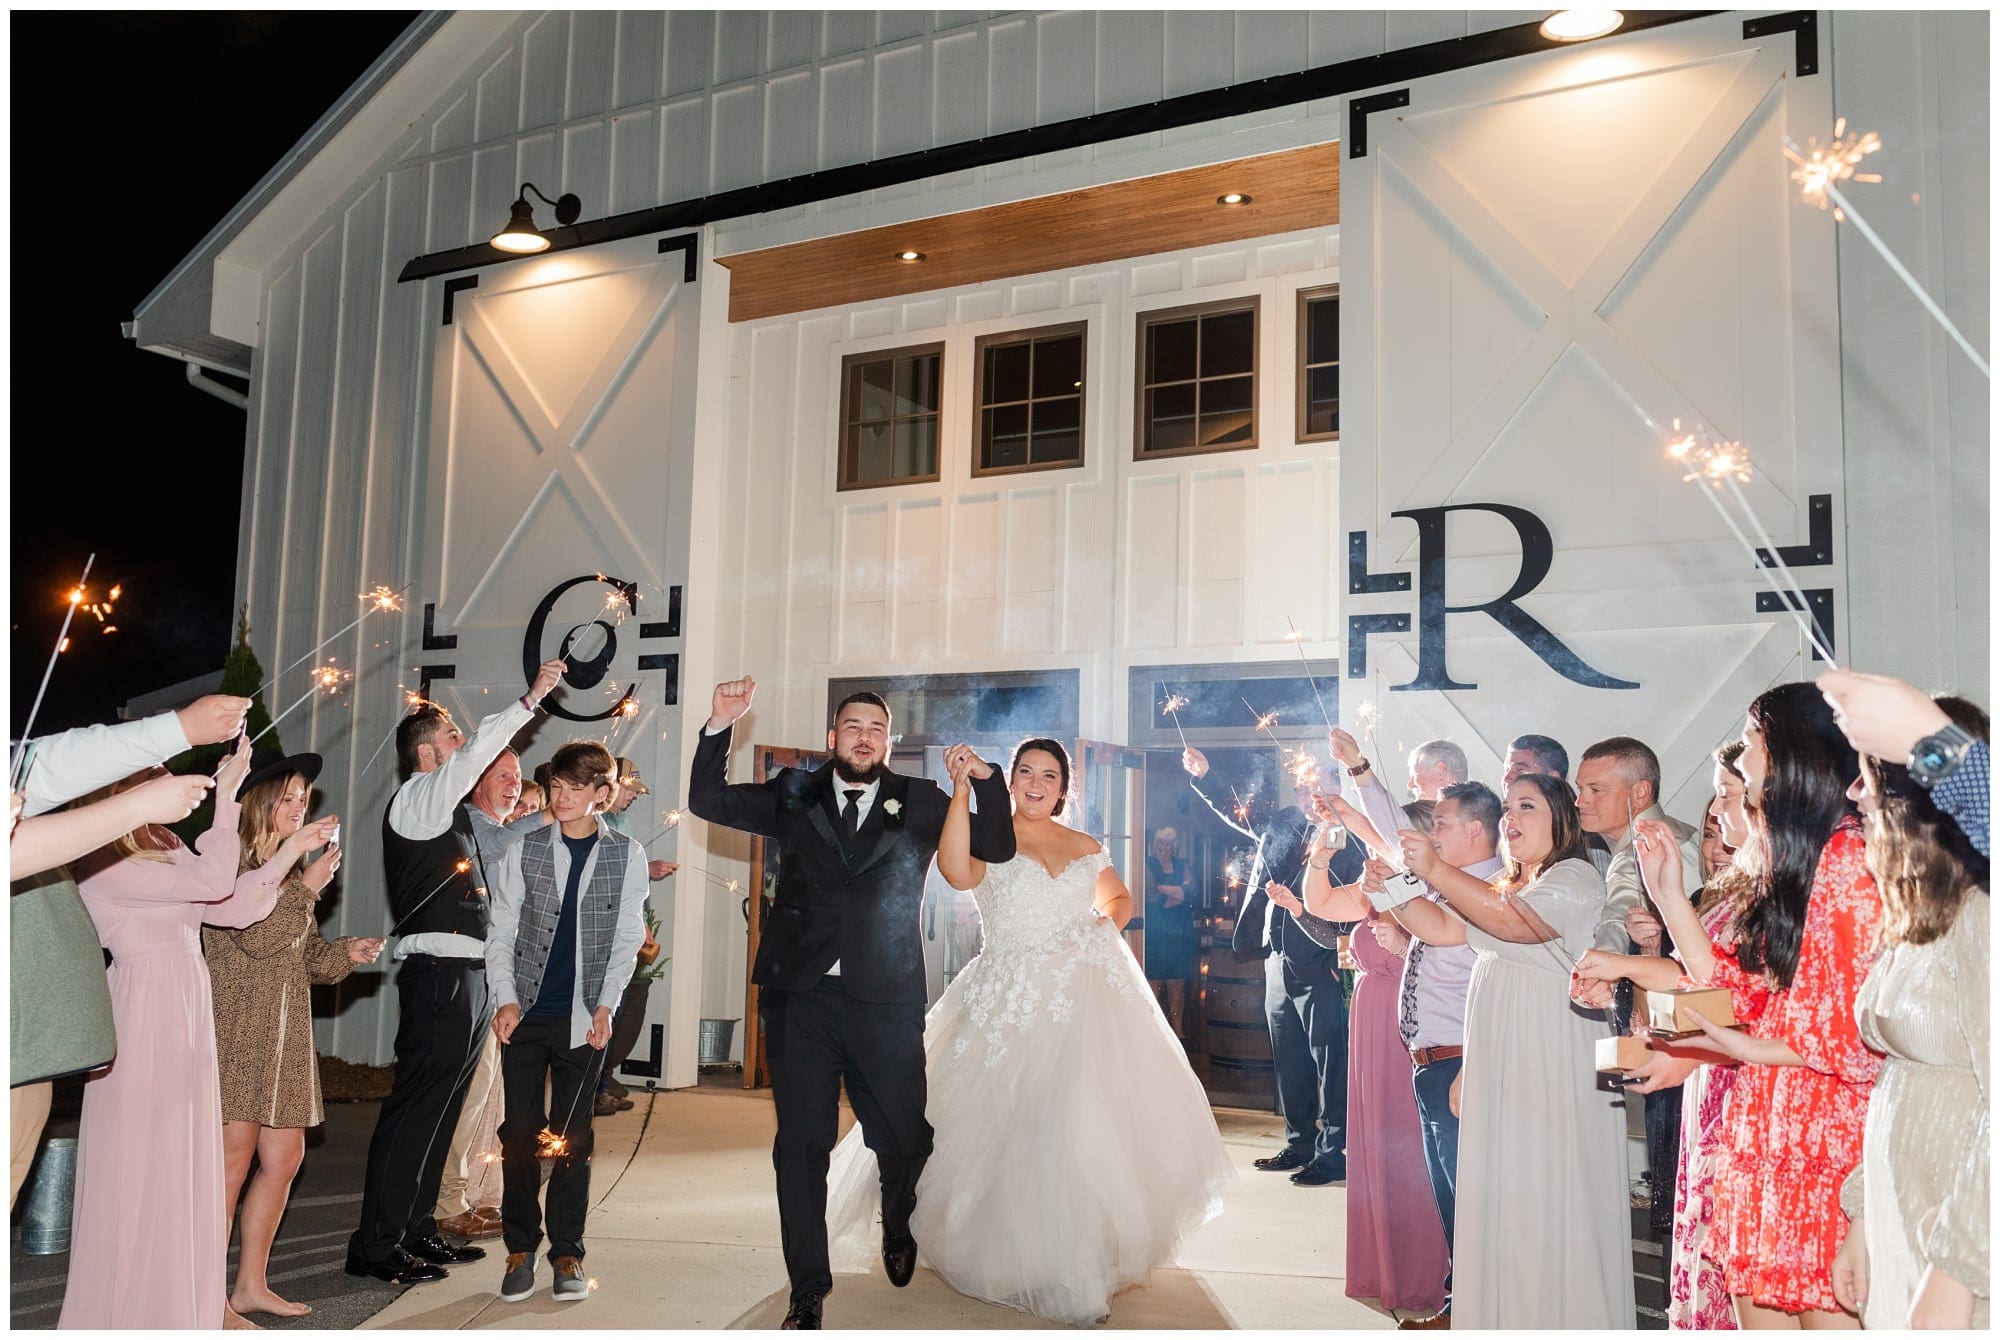 Sparkler exit at end of wedding reception